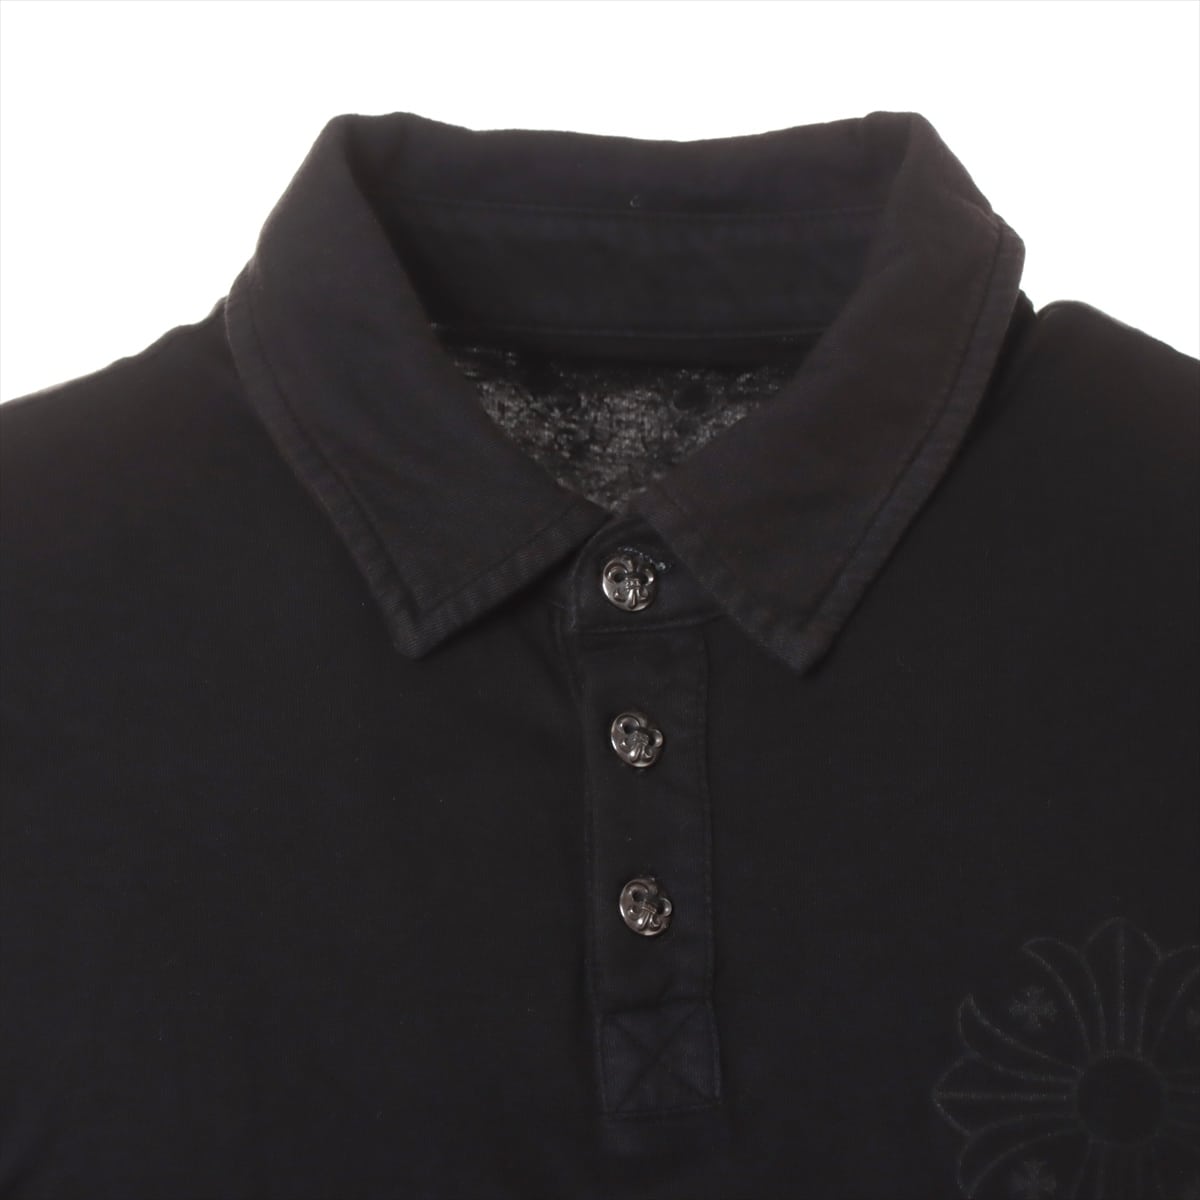 クロムハーツ ポロシャツ コットン ブラック M BSフレアボタン 半袖